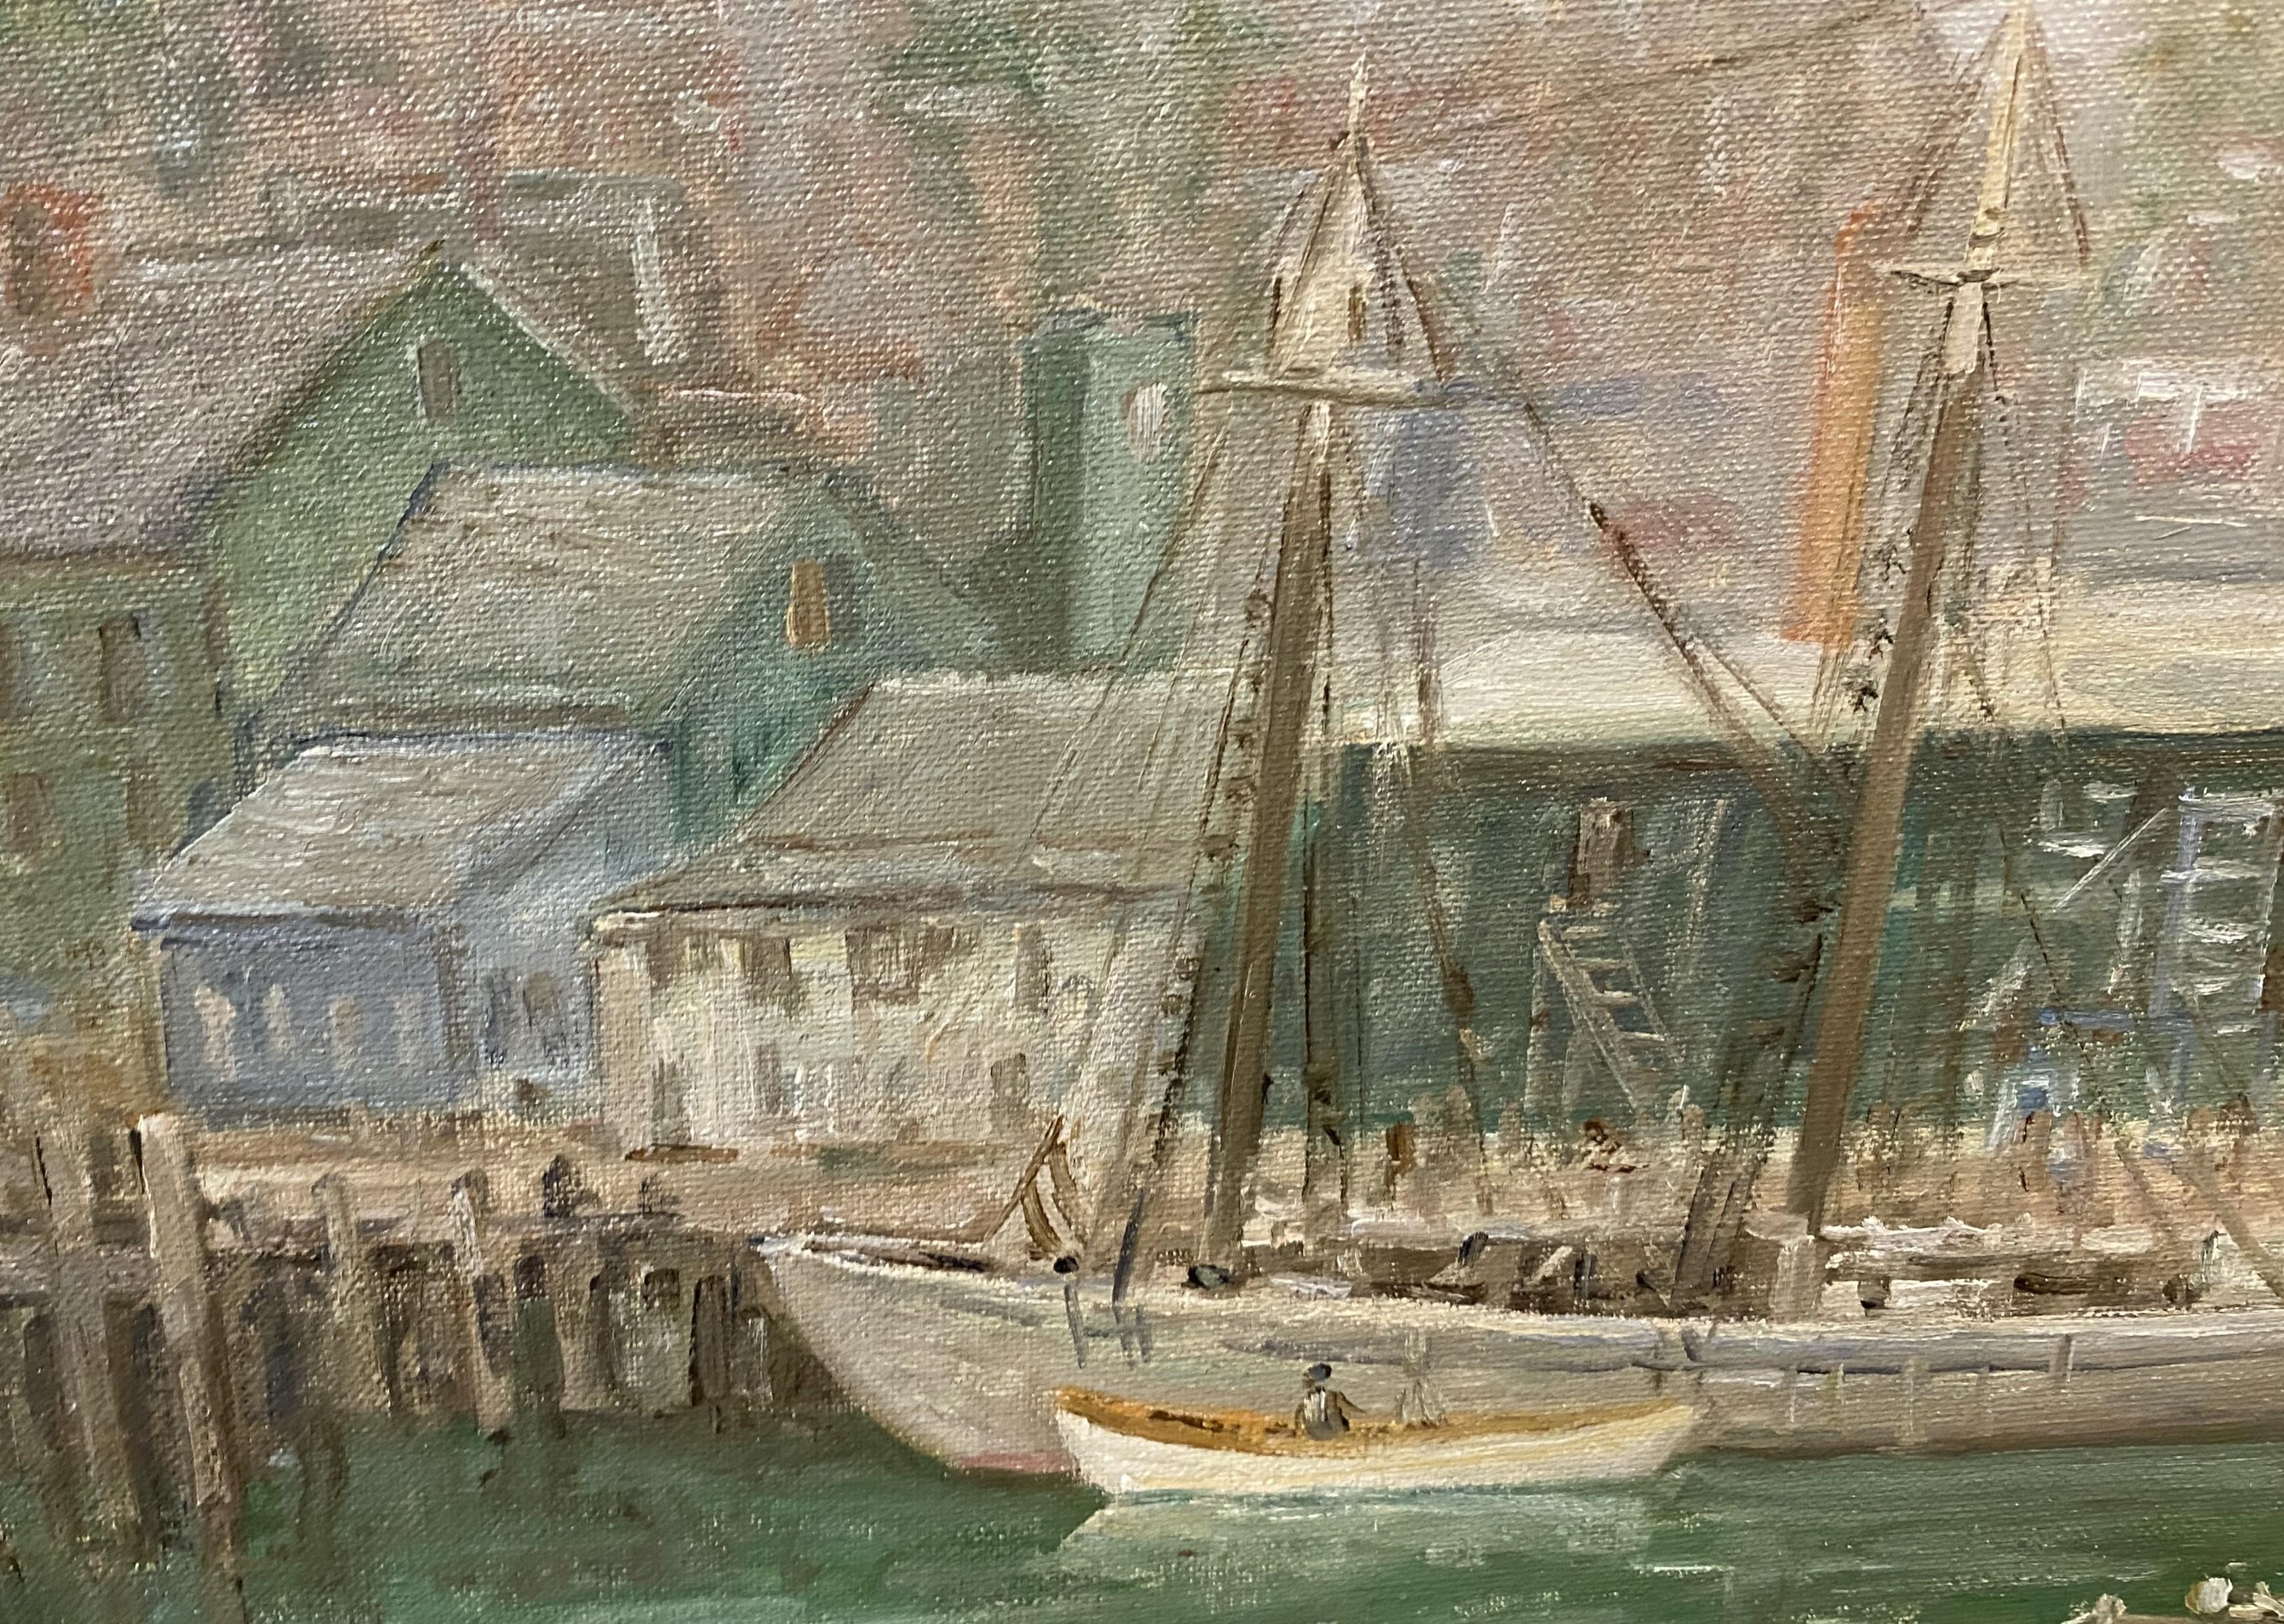 Ein schönes impressionistisches Ölgemälde des amerikanischen Künstlers Winfield Scott Clime (1881-1958) von der Küste von Cape Ann. Clime wurde in Philadelphia geboren, studierte an der Corcoran Art School und der Art Students League in New York und